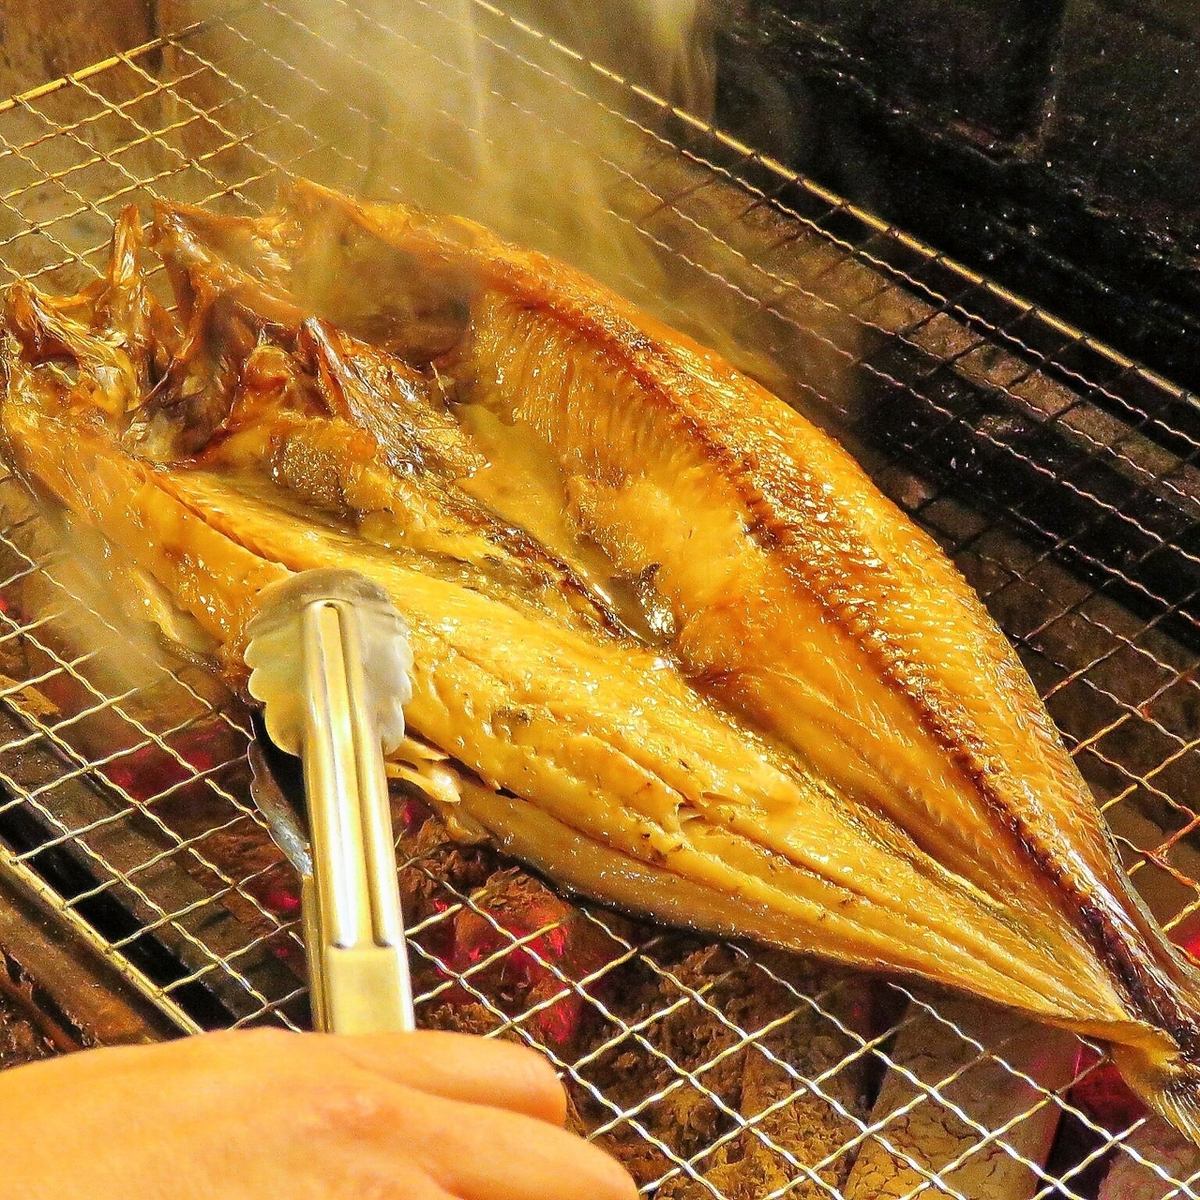 以北海道的美味海鮮料理和嚴選全國各地的當地酒恭候您的光臨！